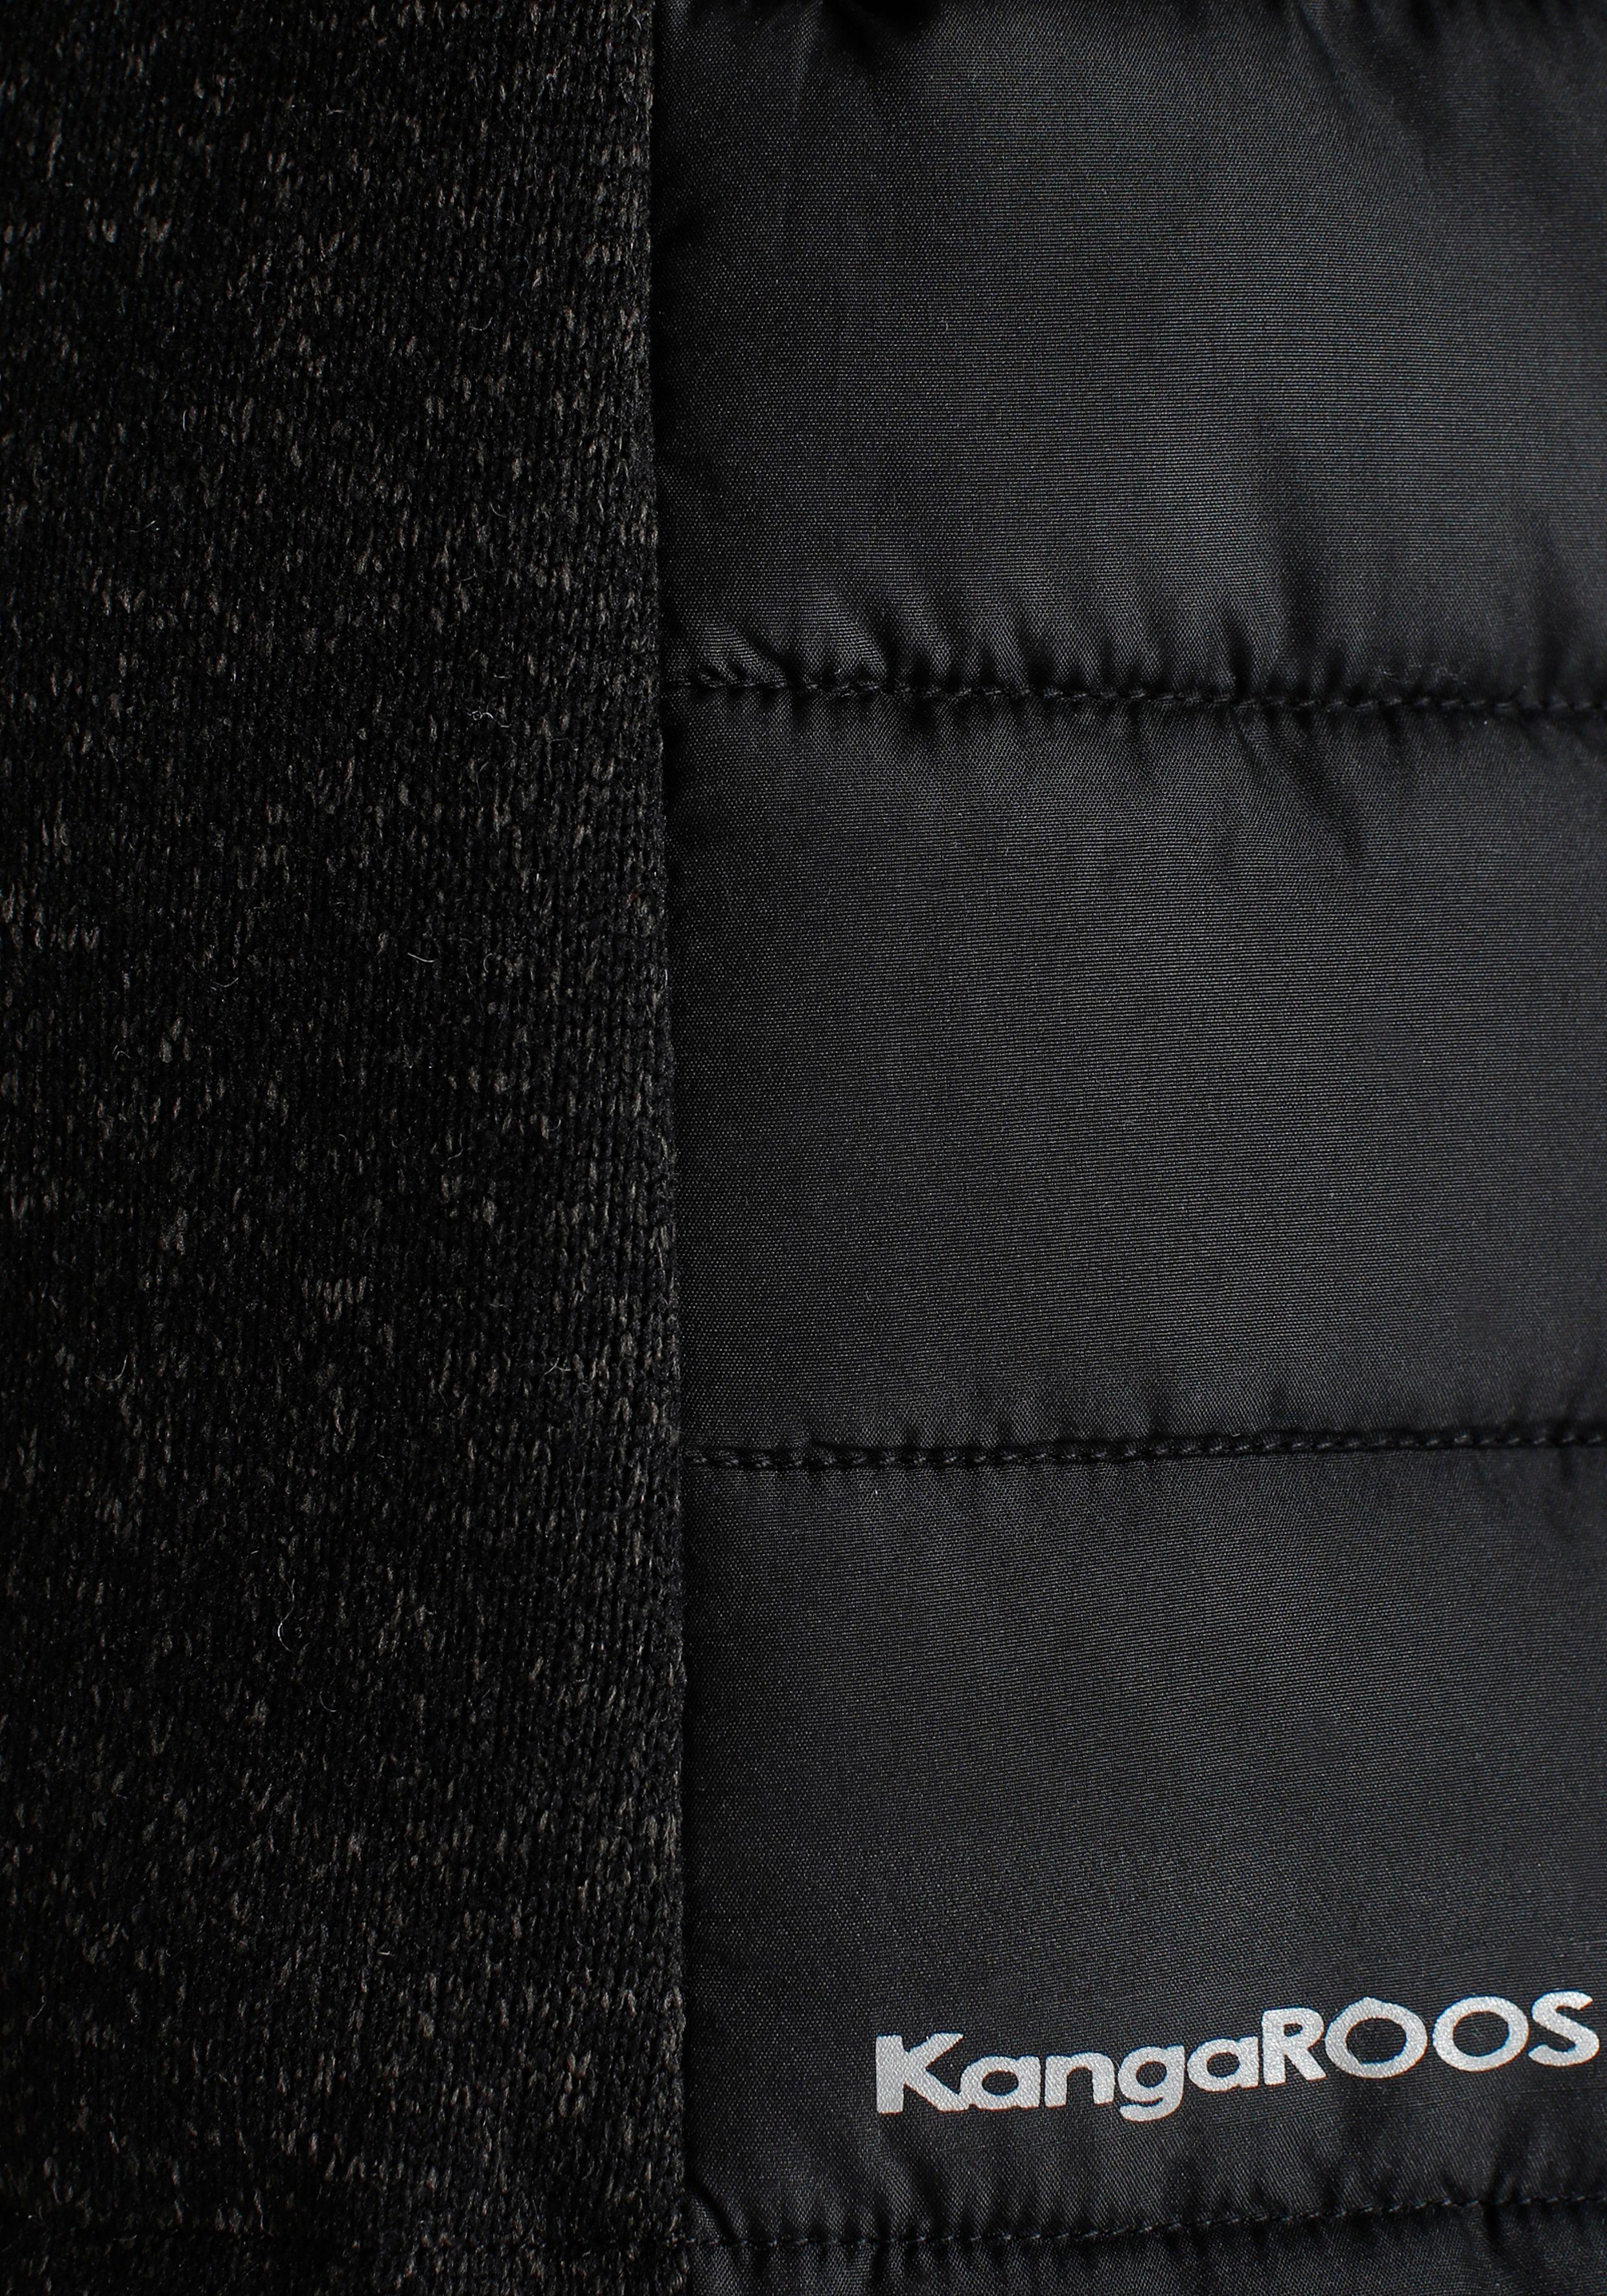 KOLLEKTION Steppjacke - mit trendigem im schwarz abnehmbarer Material-Mix Kapuze NEUE KangaROOS